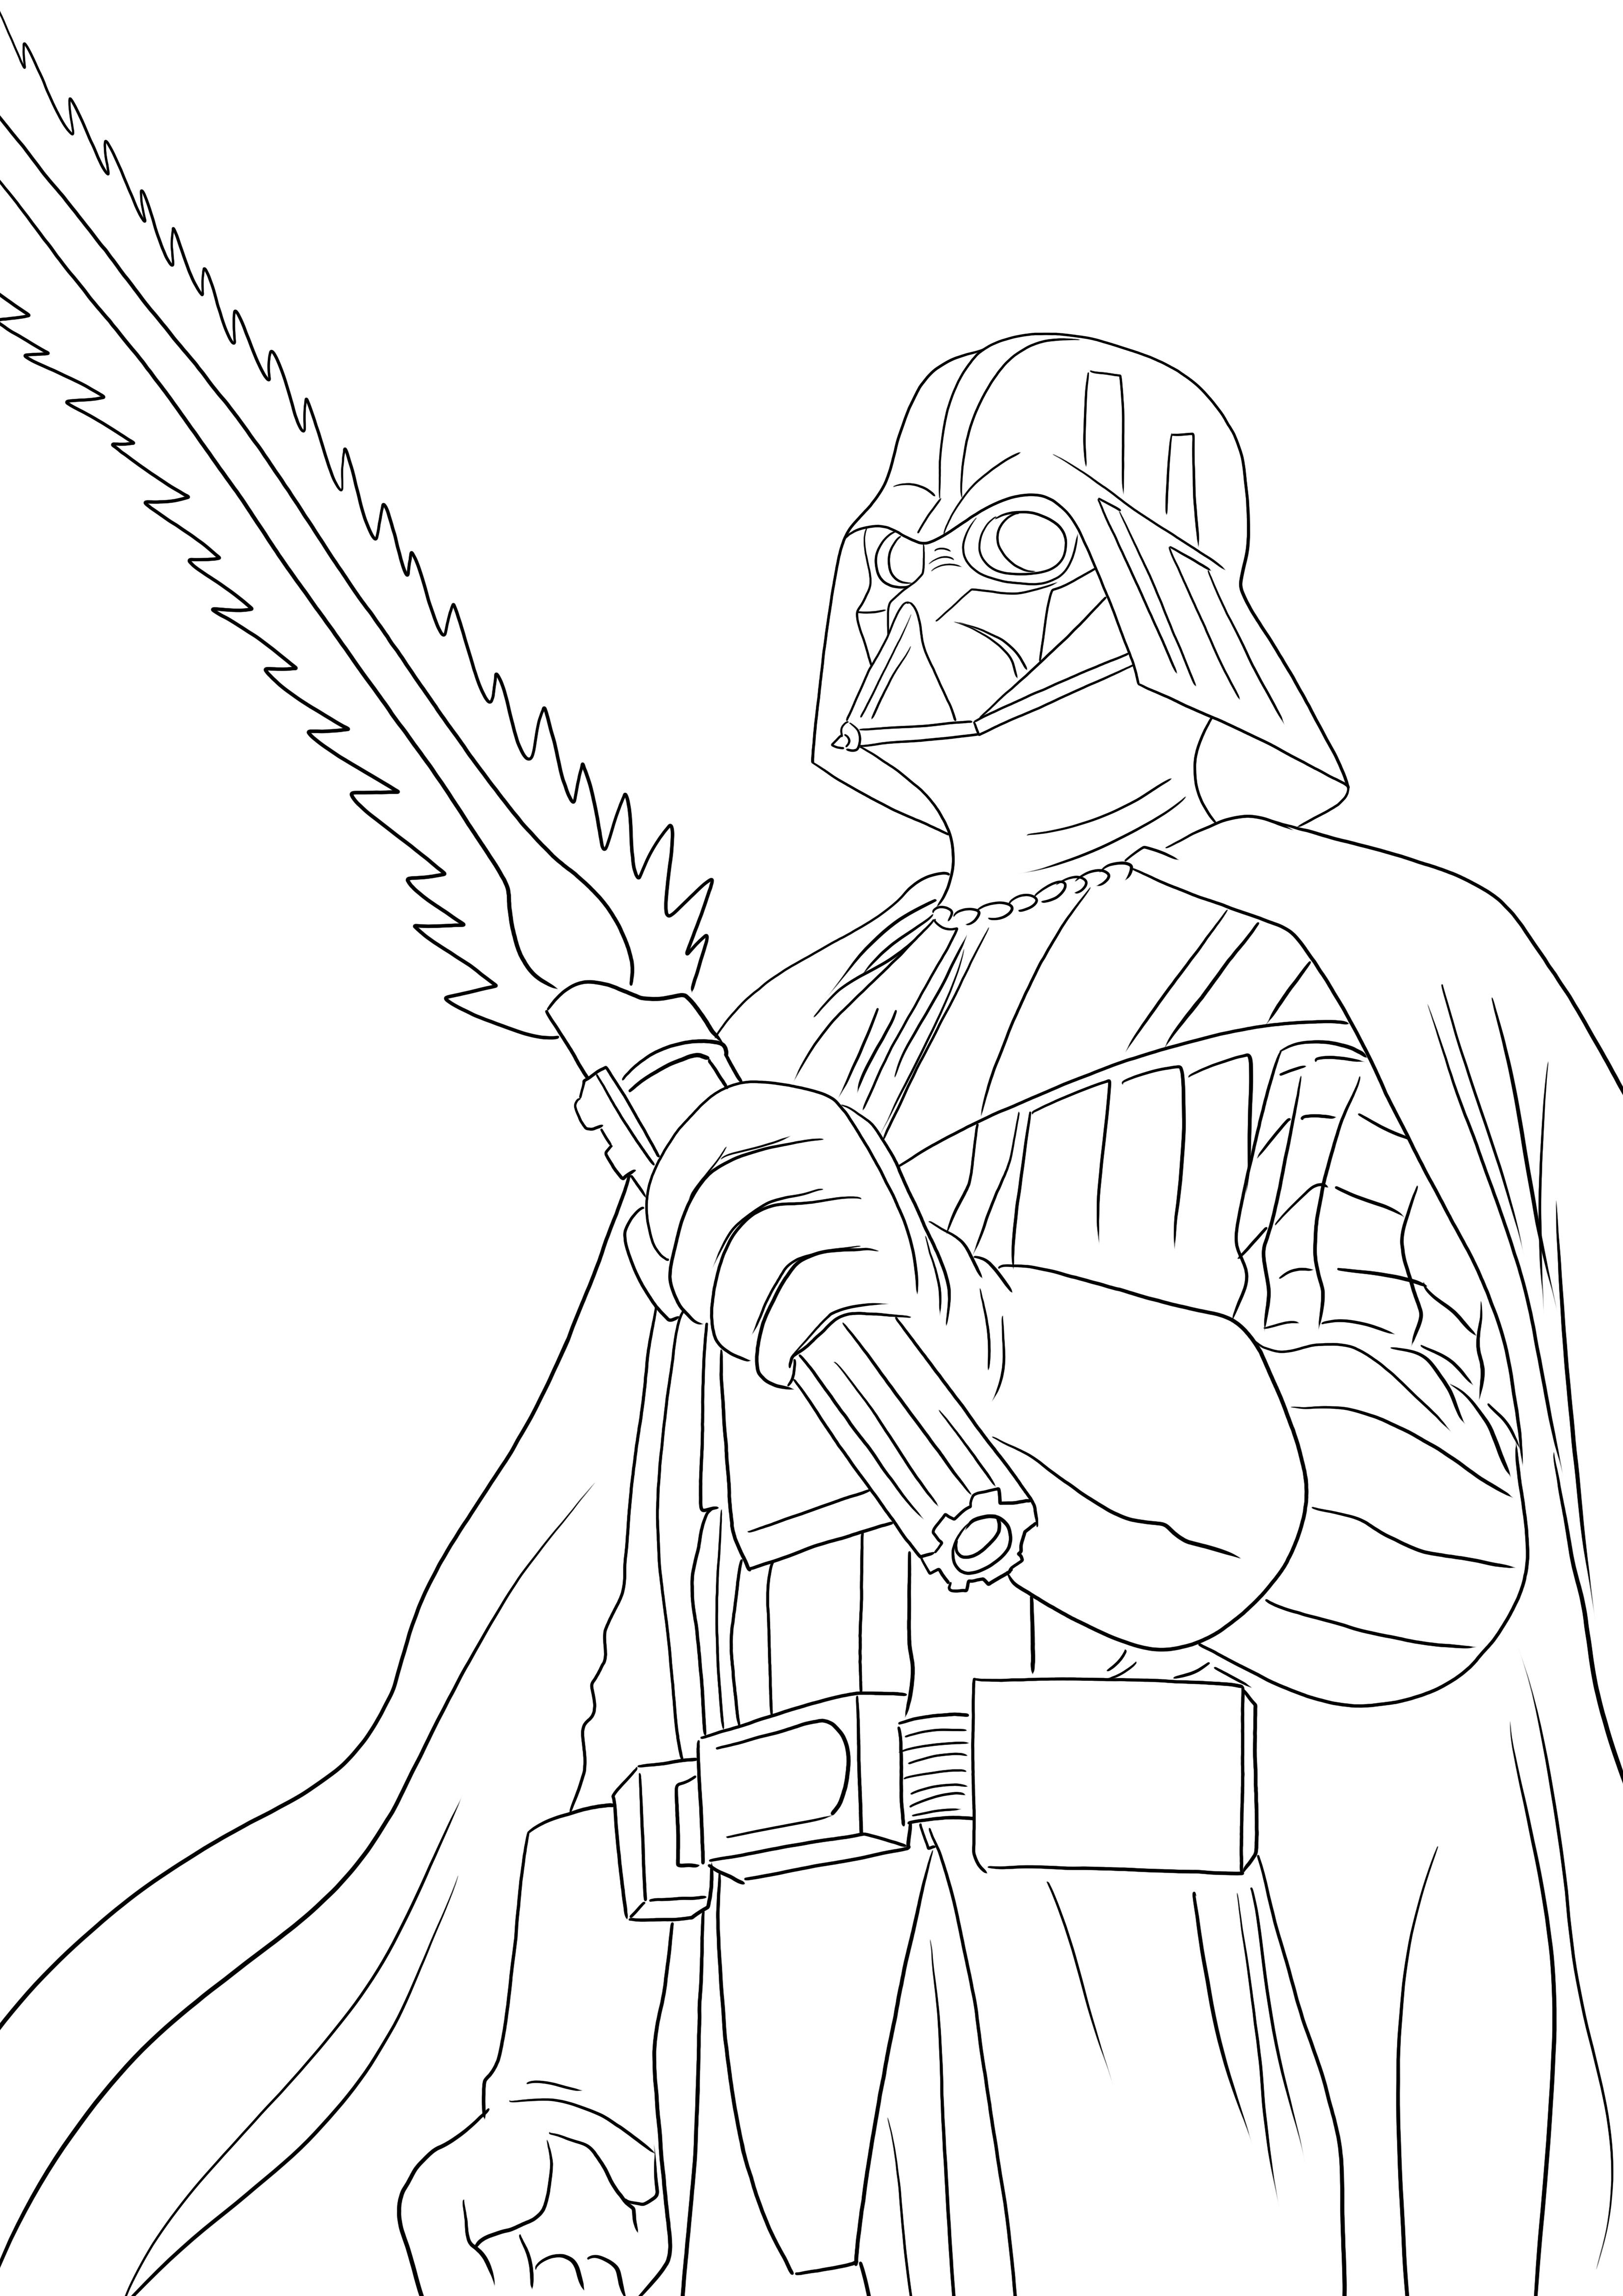 Czarny charakter Dartha Vadera do wydrukowania i pokolorowania dla wszystkich miłośników Gwiezdnych Wojen